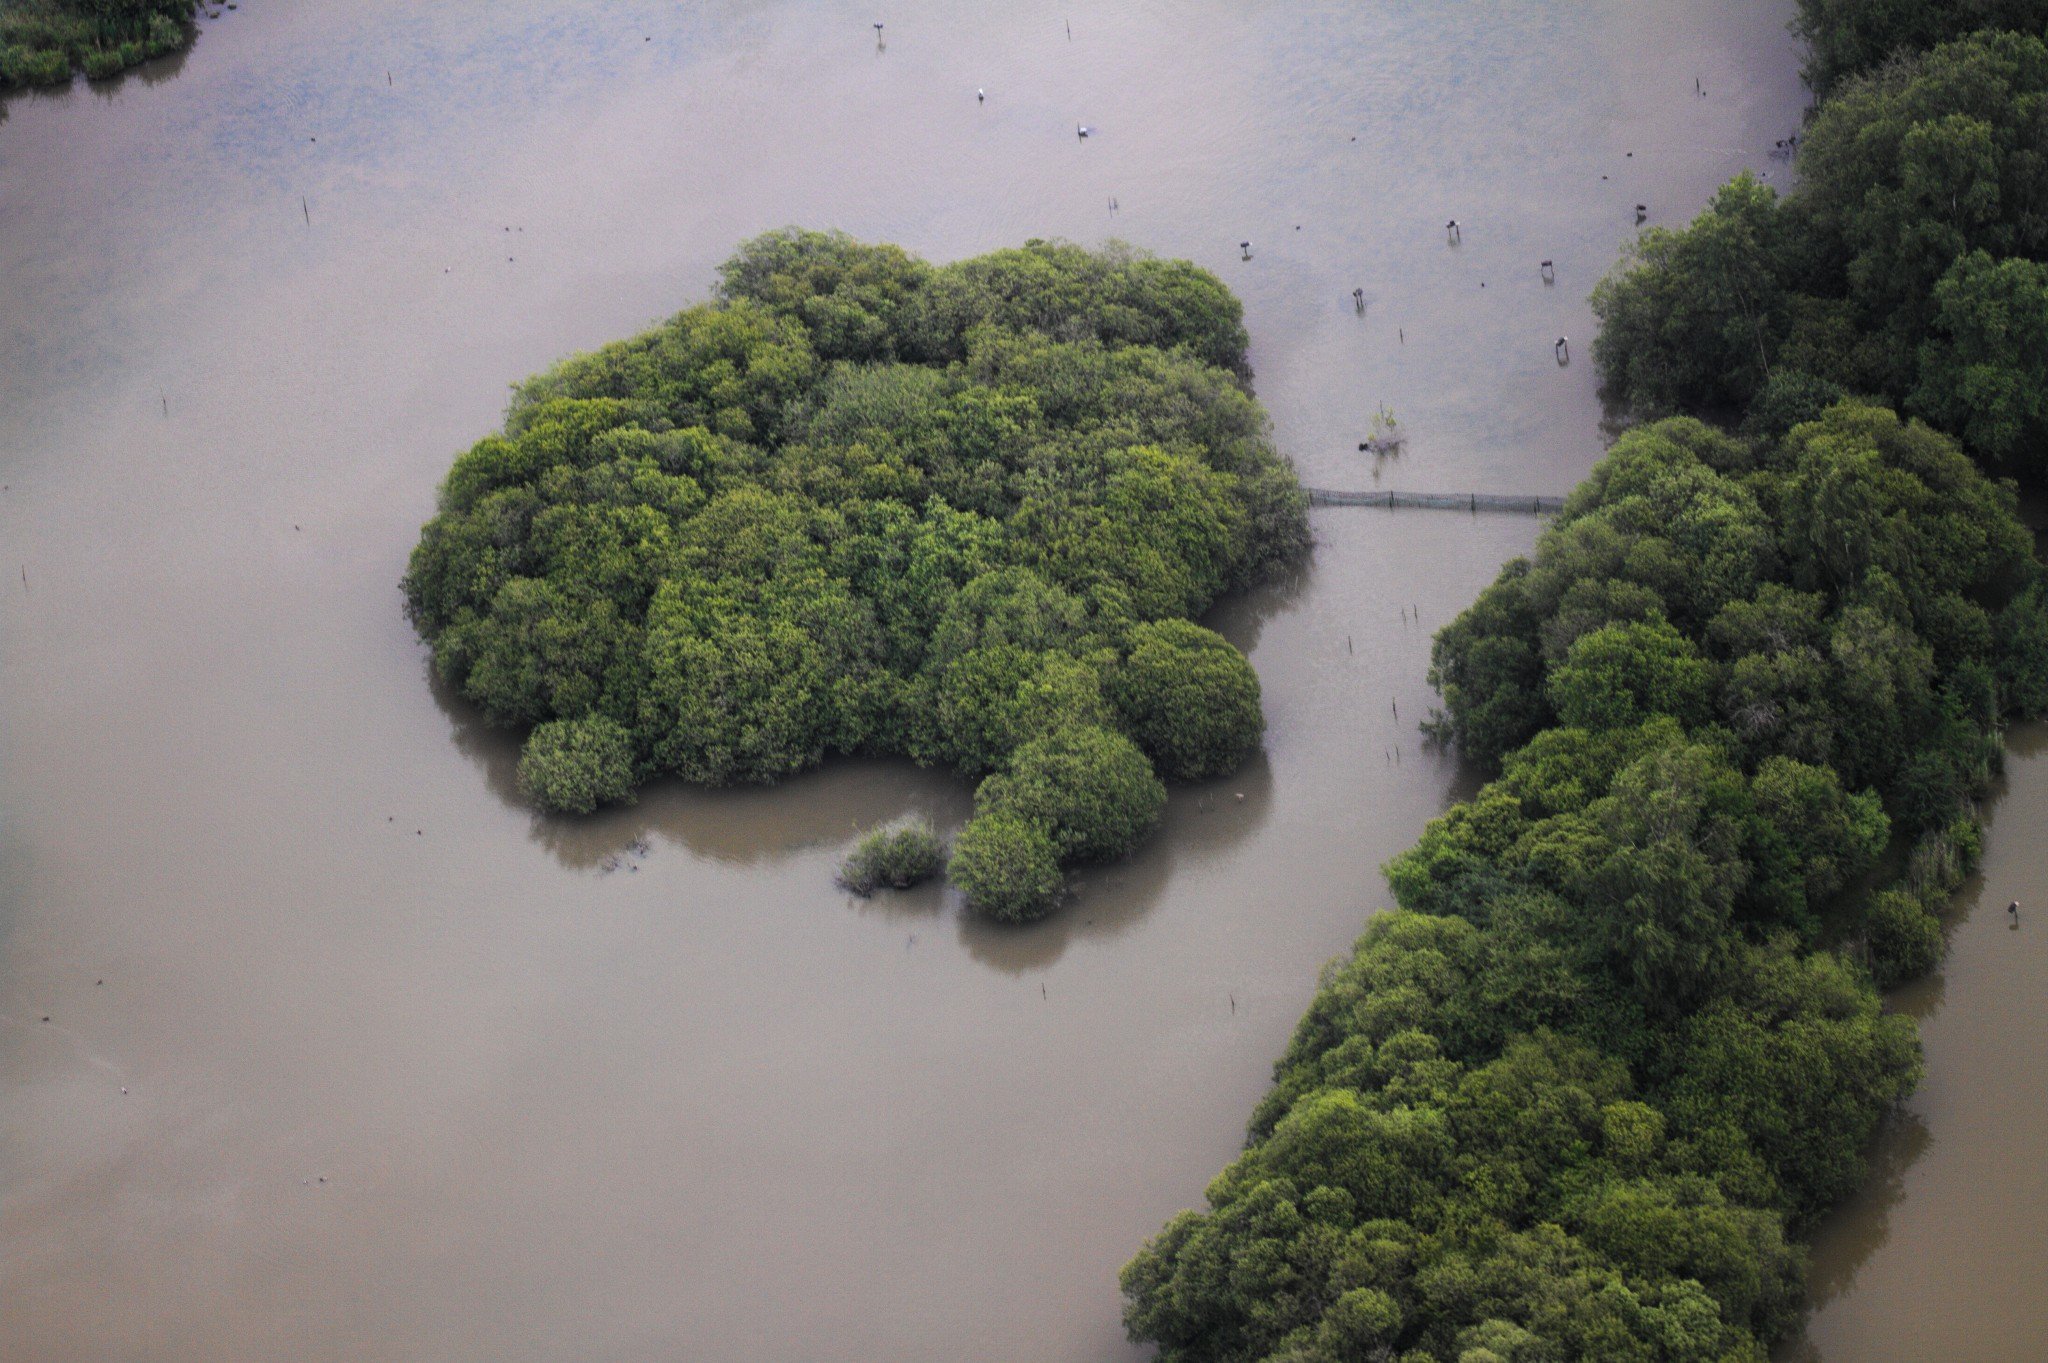 Une étendue d’eau vue d’avion, avec un îlot couvert de végétation dense